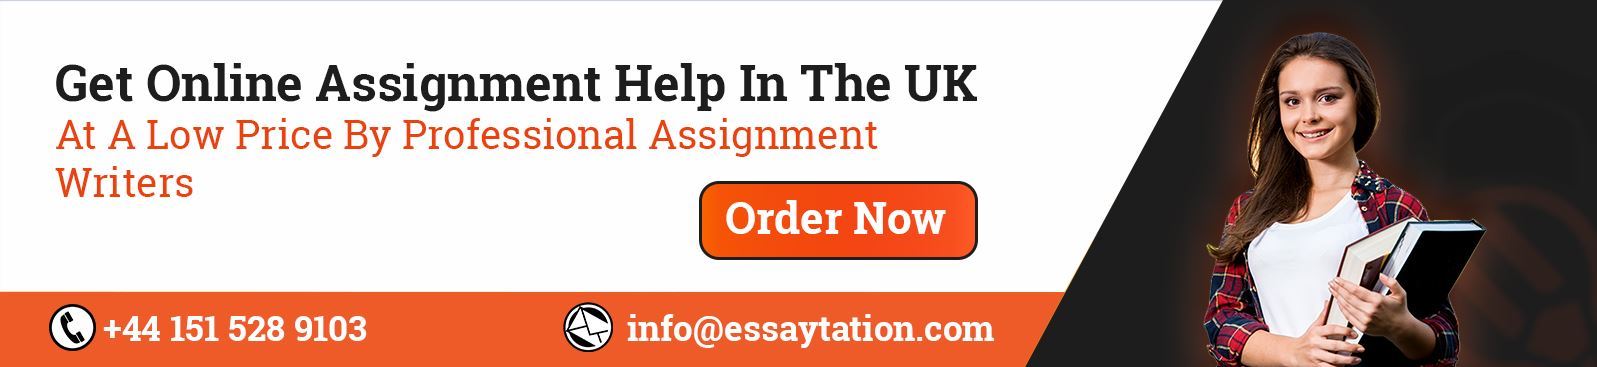 Online Assignment Help in Uk